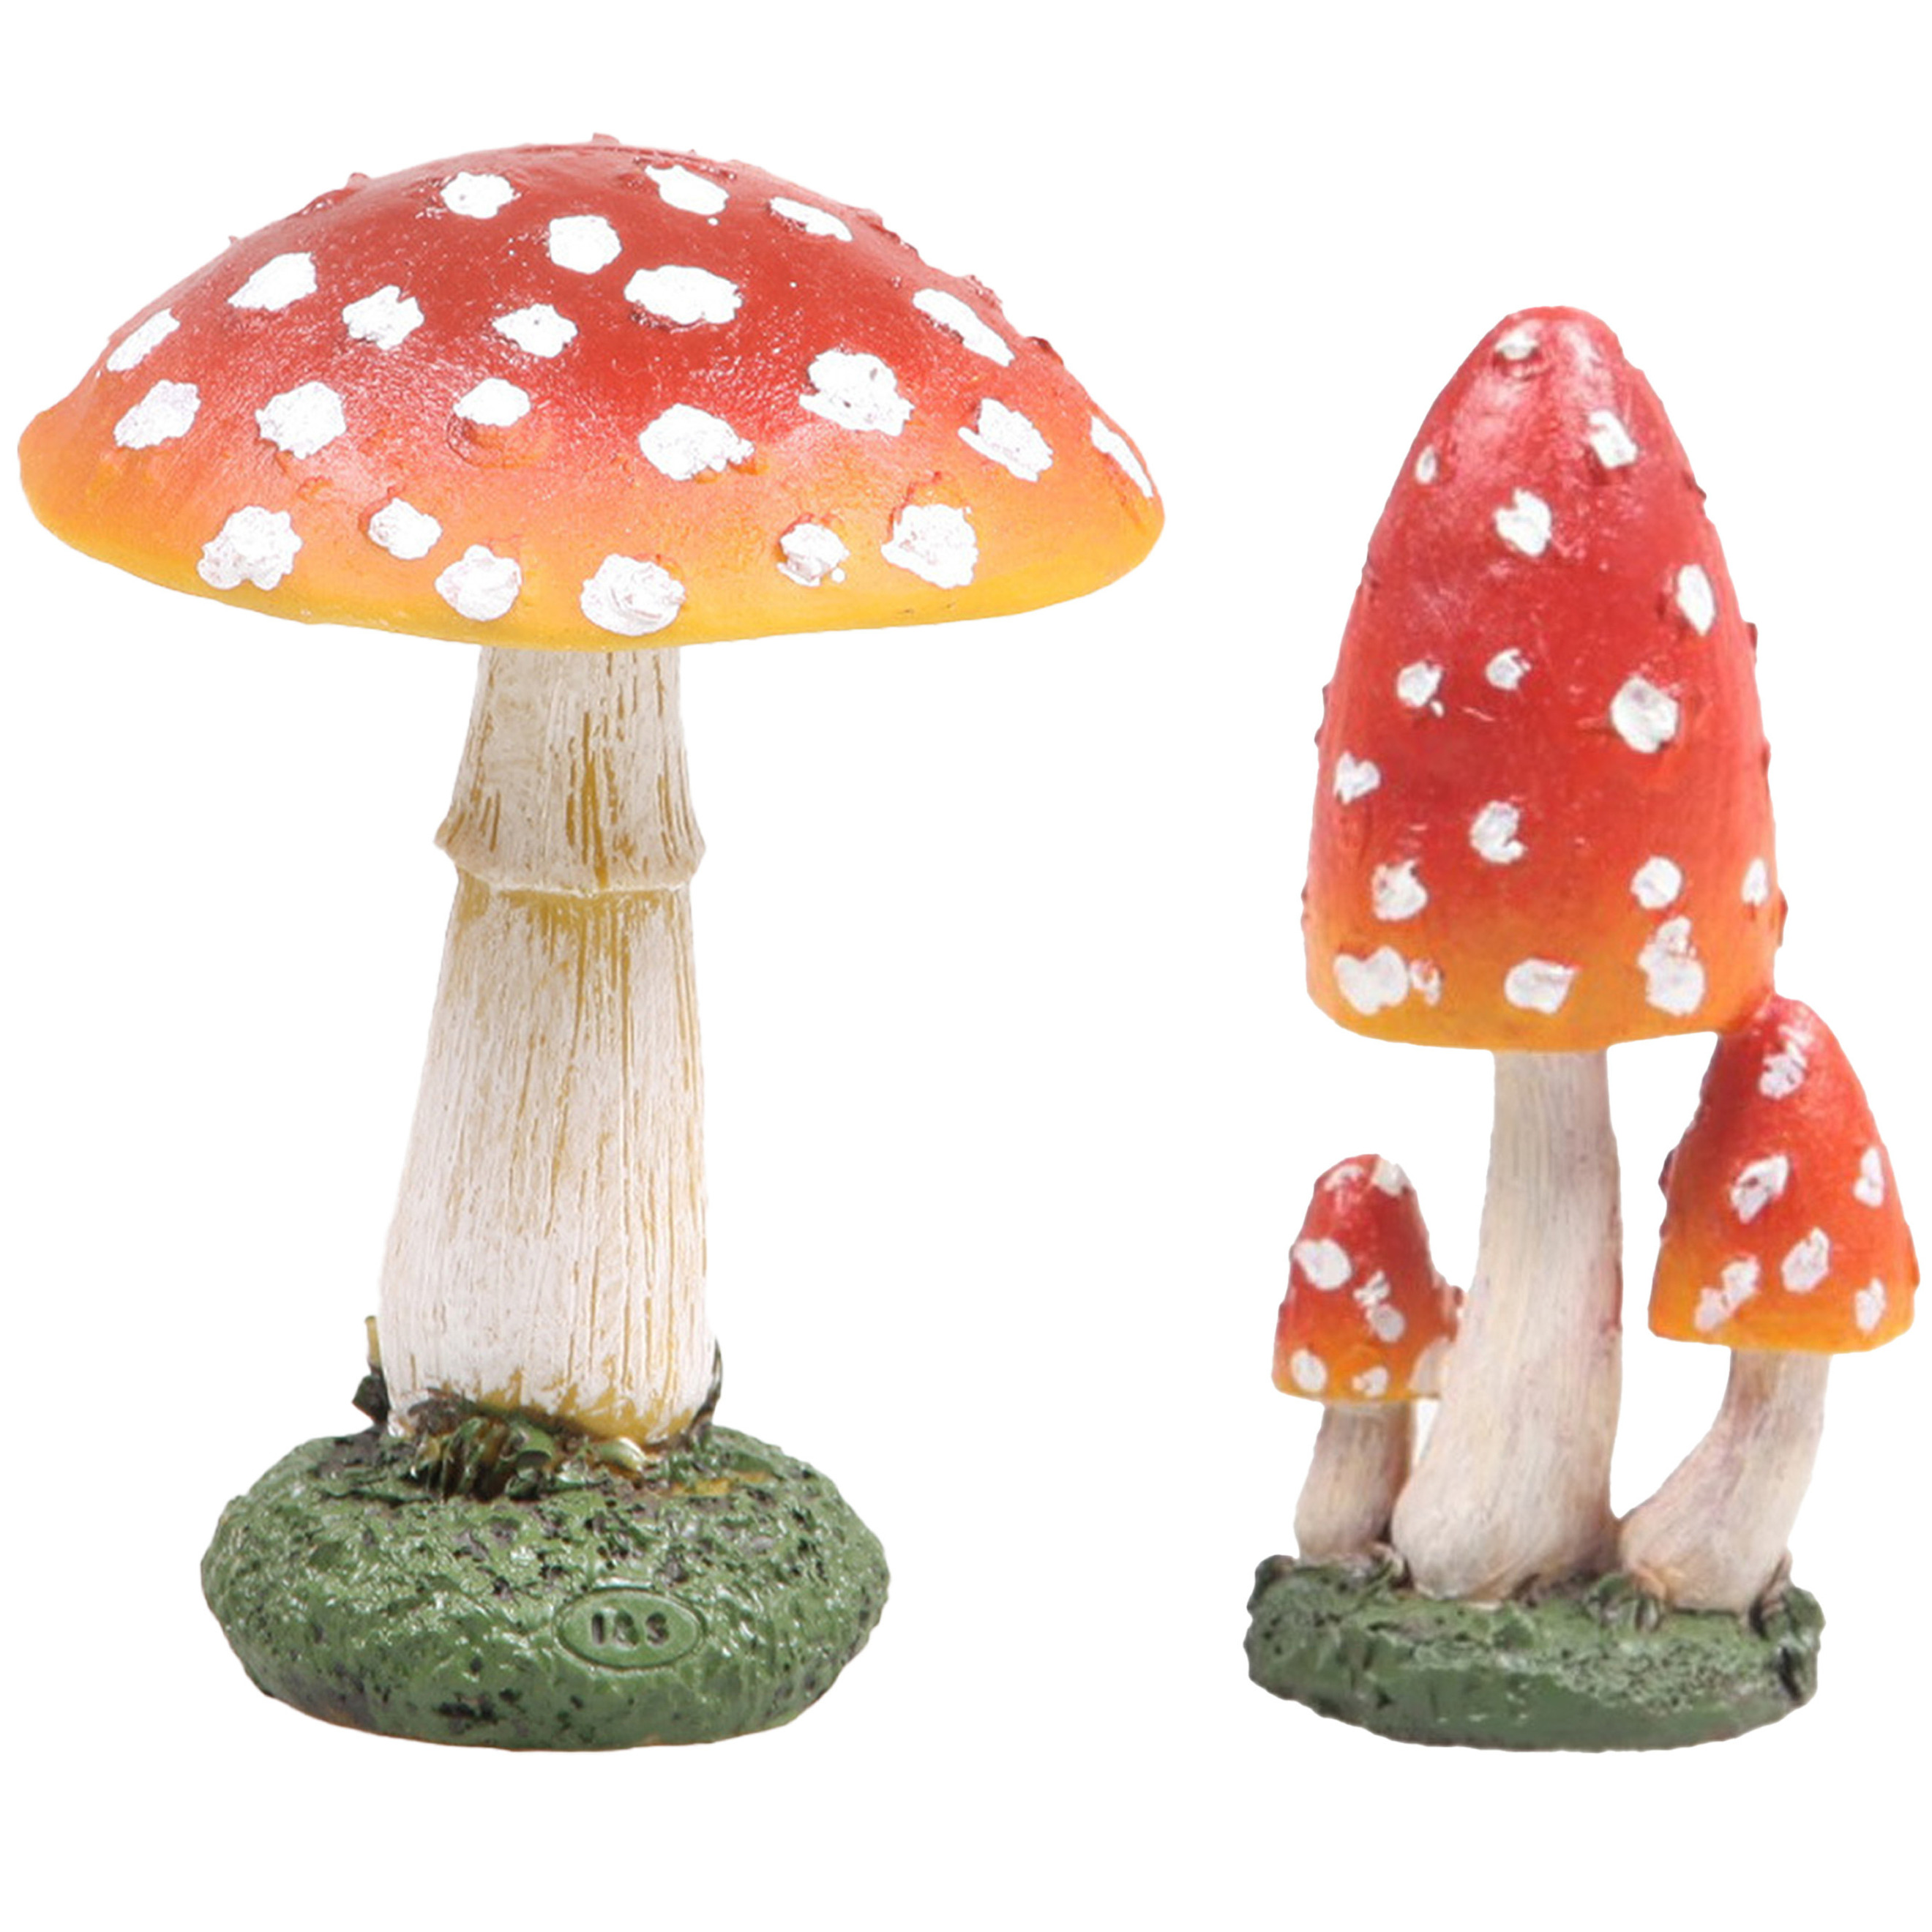 Decoratie paddenstoelen setje met 4x vliegenzwam paddenstoelen herfst thema